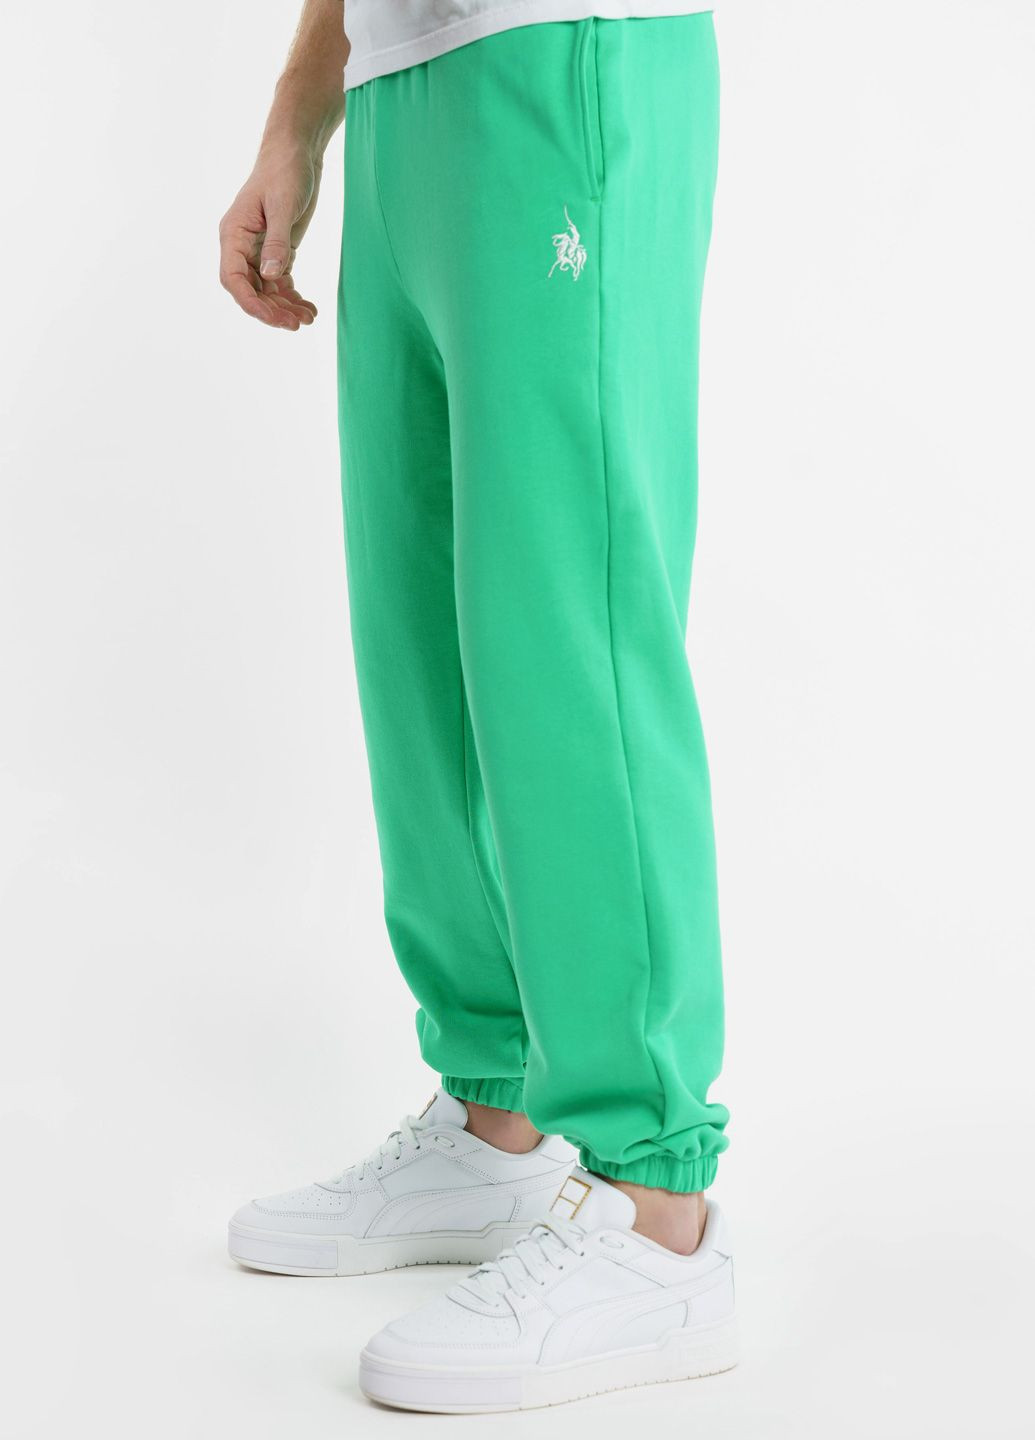 Спортивні штани чоловічі Freedom зелені Arber sportpants m-sbr6 (282955307)